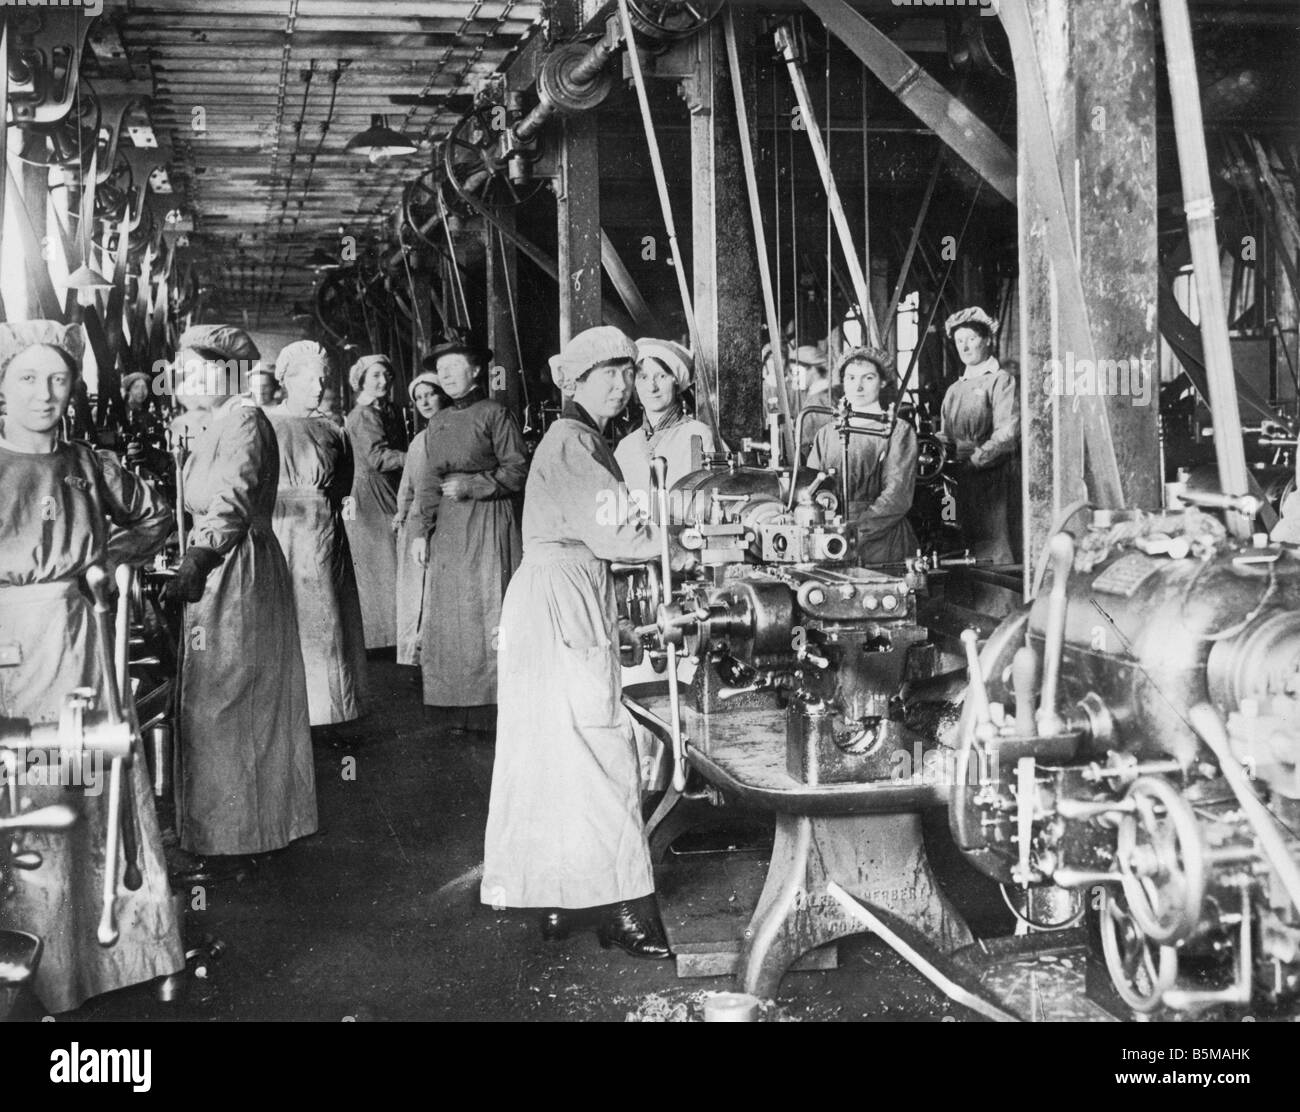 2 G55 W2 1916 2 Femmes dans l'histoire de l'usine de munitions Scot 1916 Guerre mondiale Guerre 1 Économie Société mesdames comme travailleurs temporaires dans un Banque D'Images